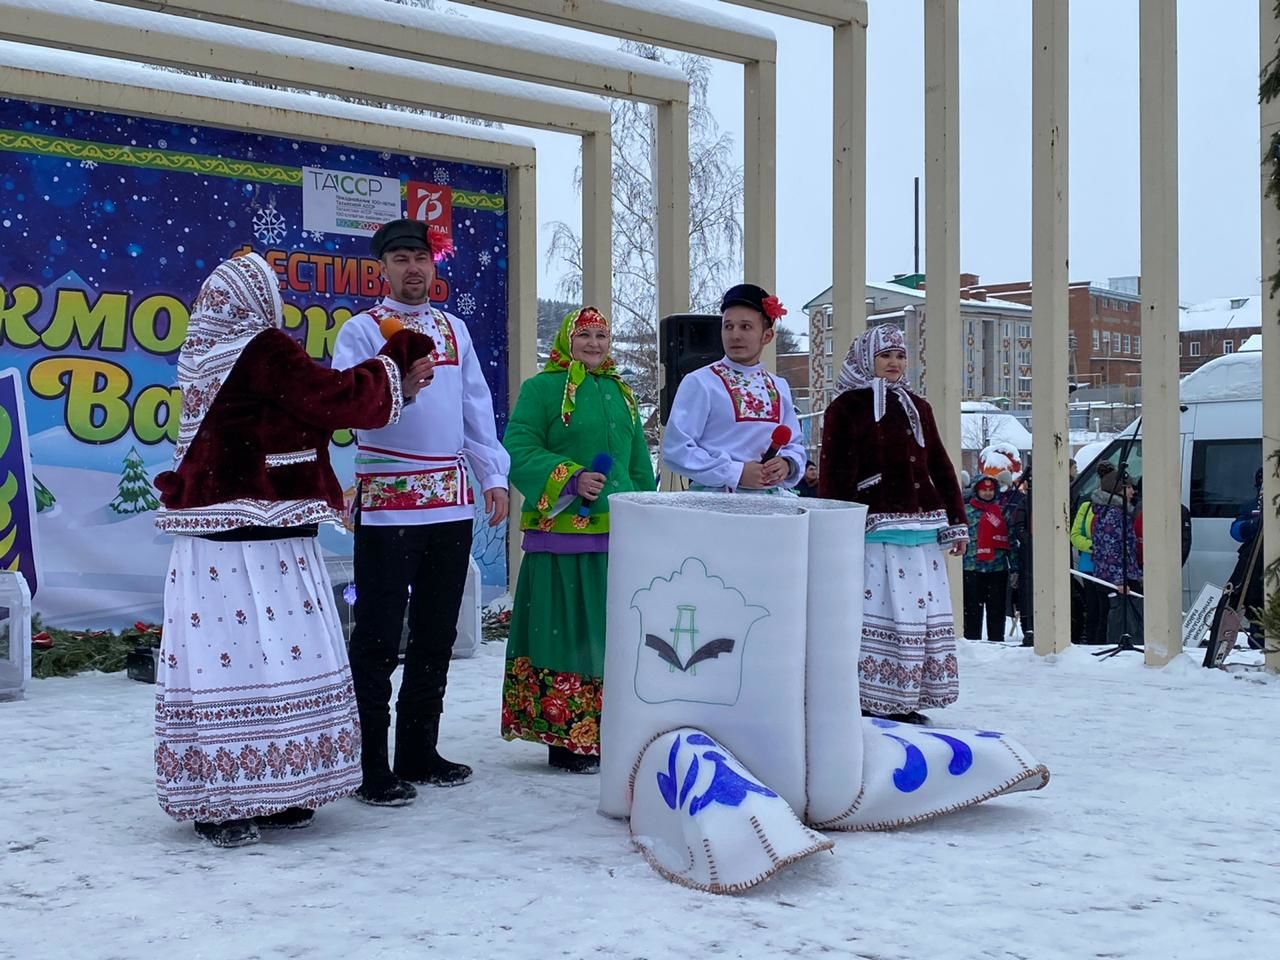 Фестиваль «Кукморские валенки-2021» (#ITEKFEST): самые яркие моменты народных гуляний